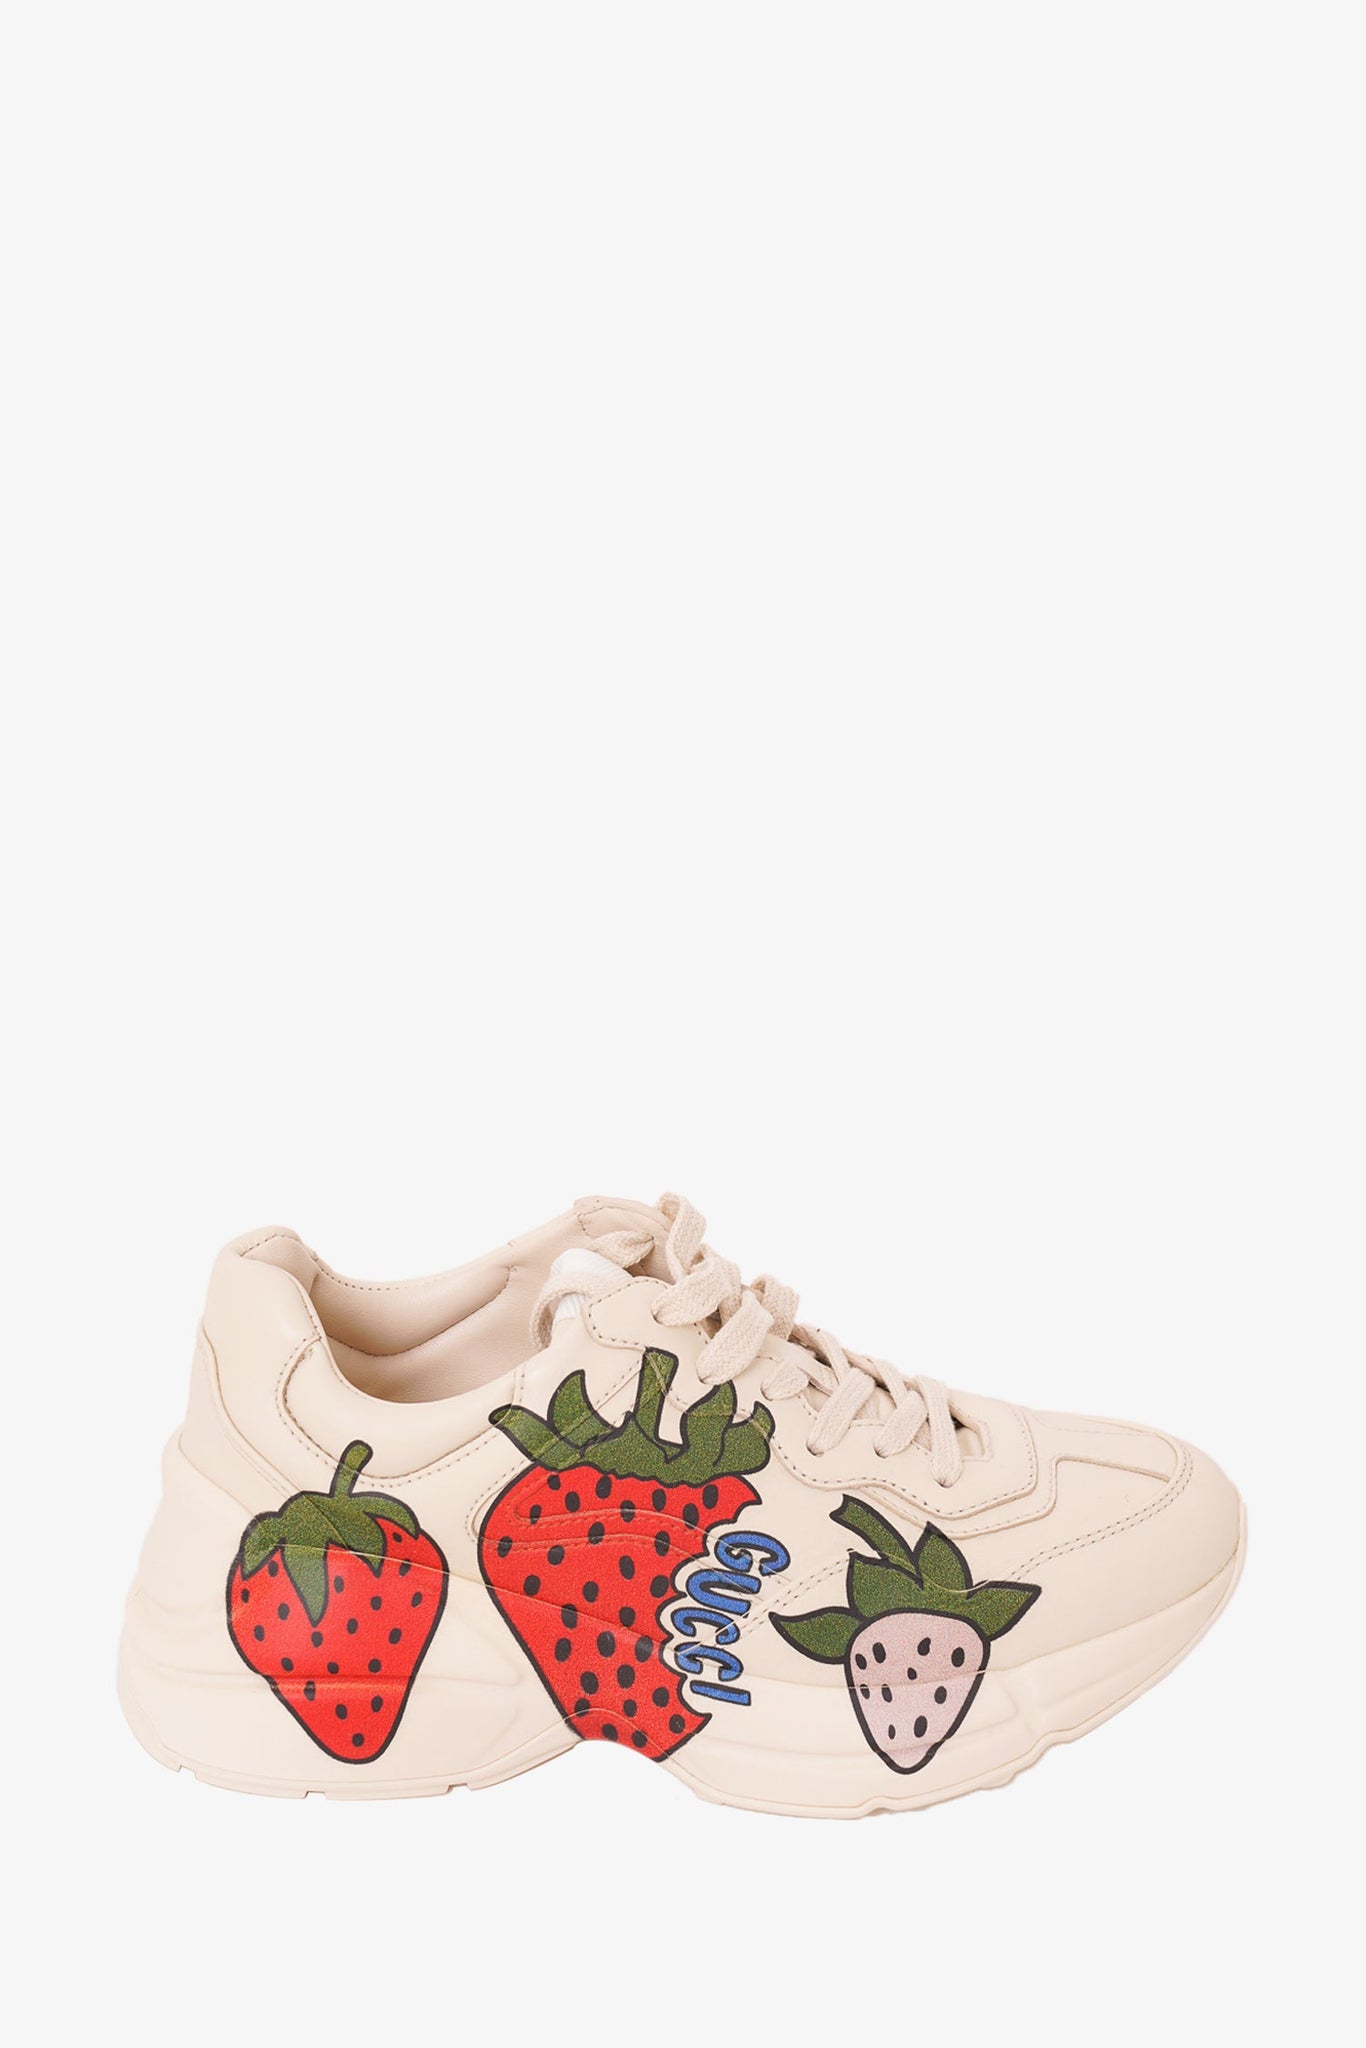 Gucci White Rhyton Strawberry Print Sneaker sz 34.5